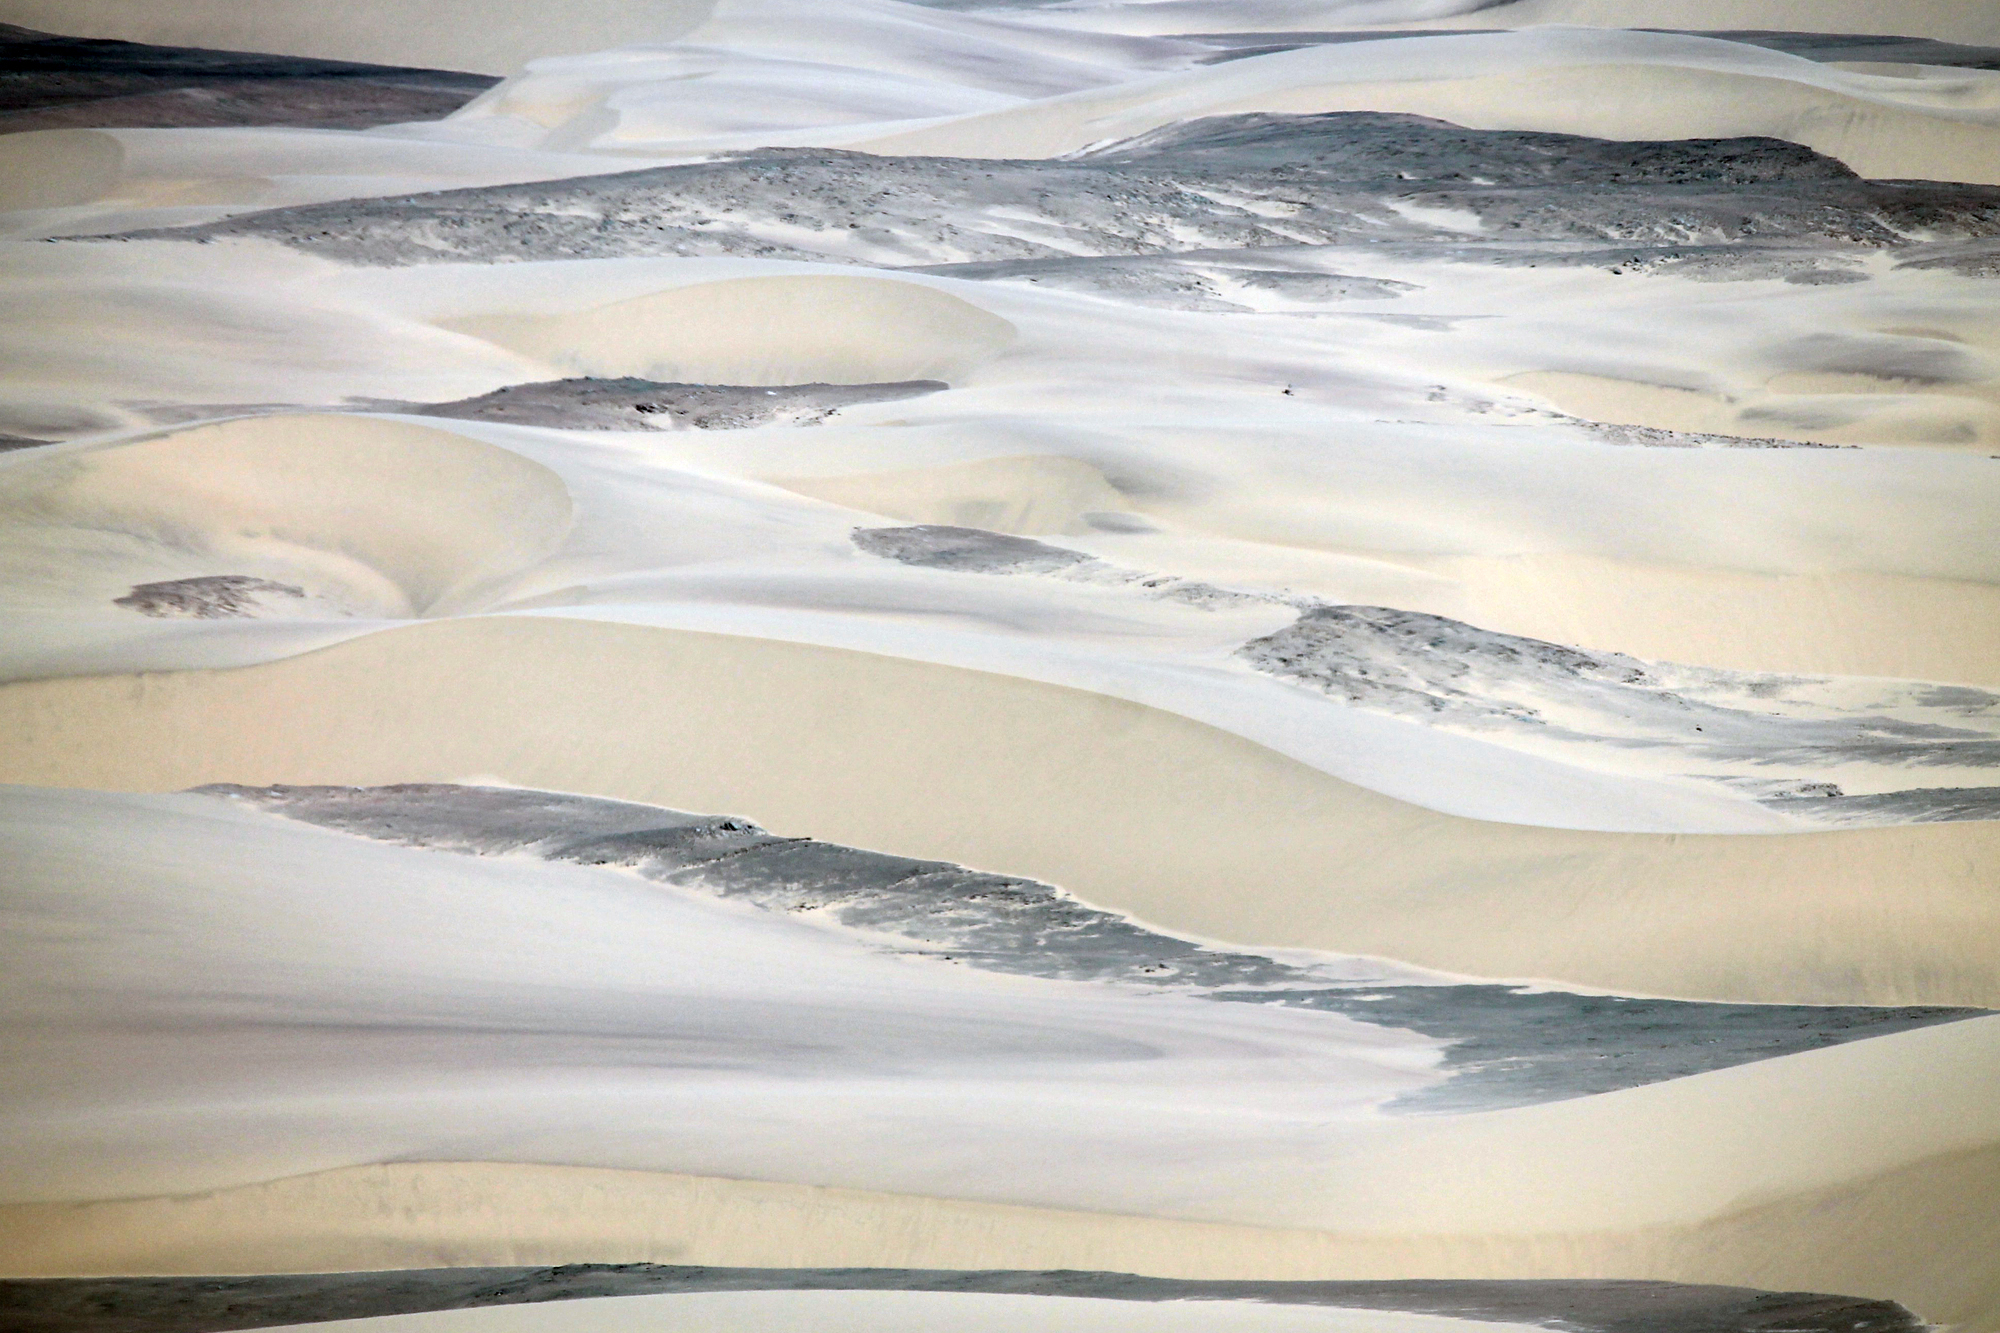  Dunes near the Skeleton Coast, Namibia 